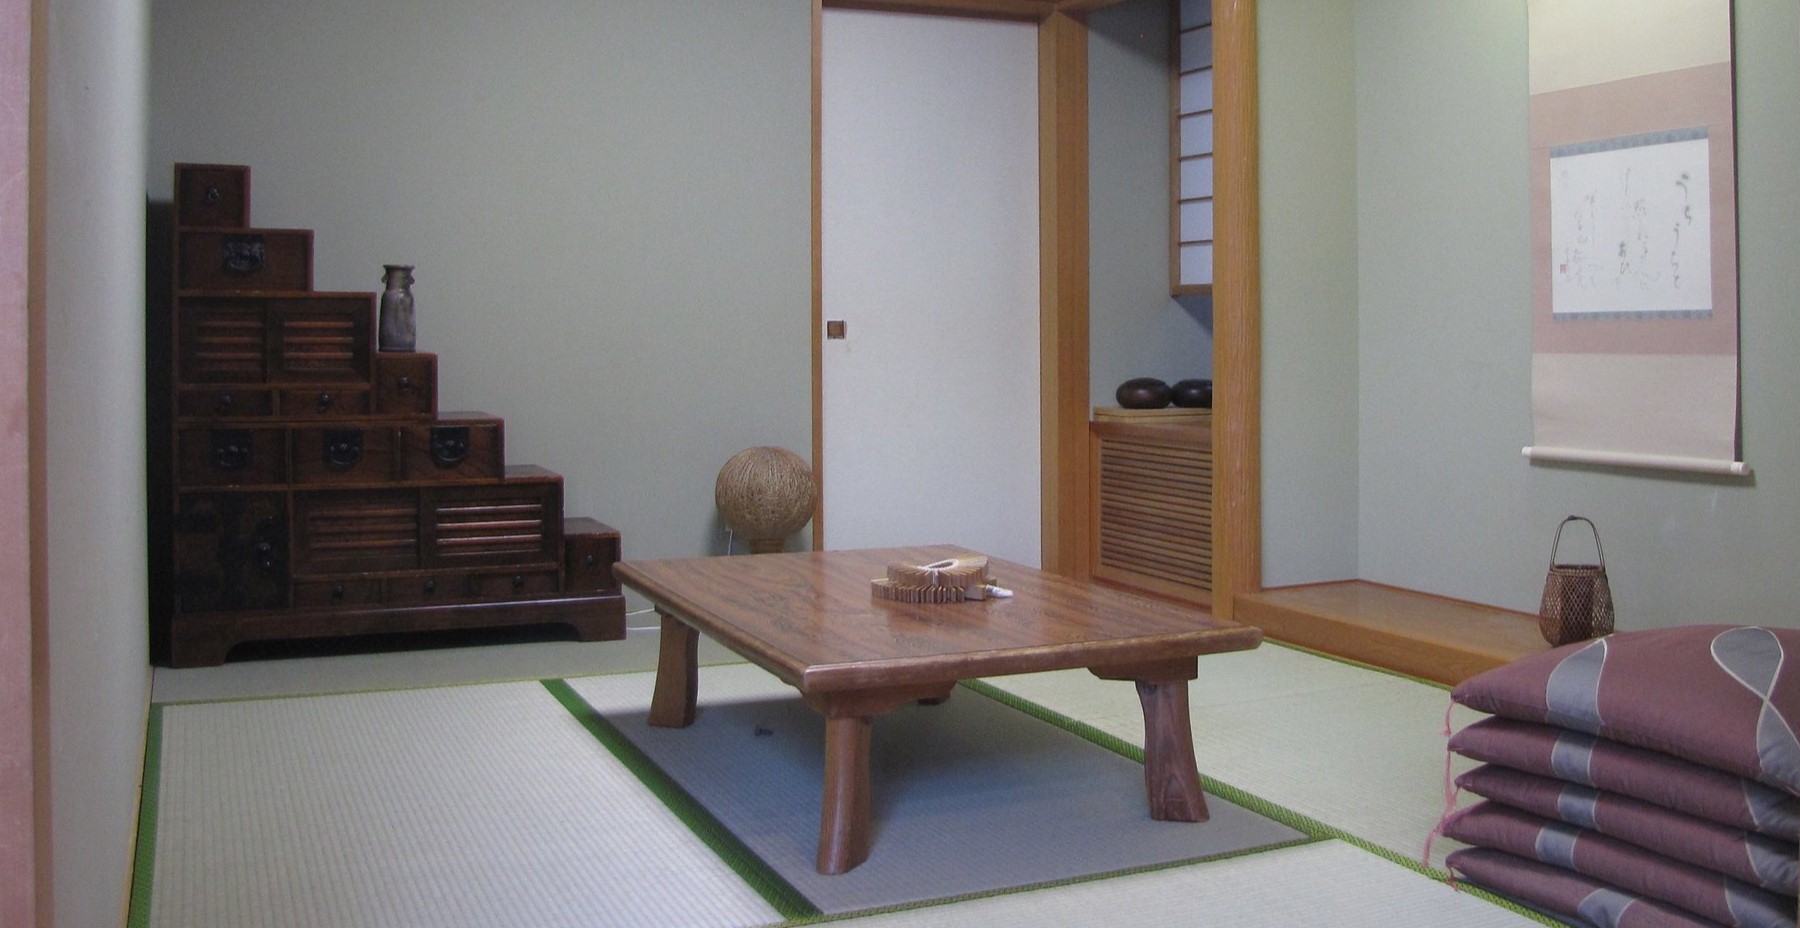 Центральным элементом комнаты является столик для чайной церемонии